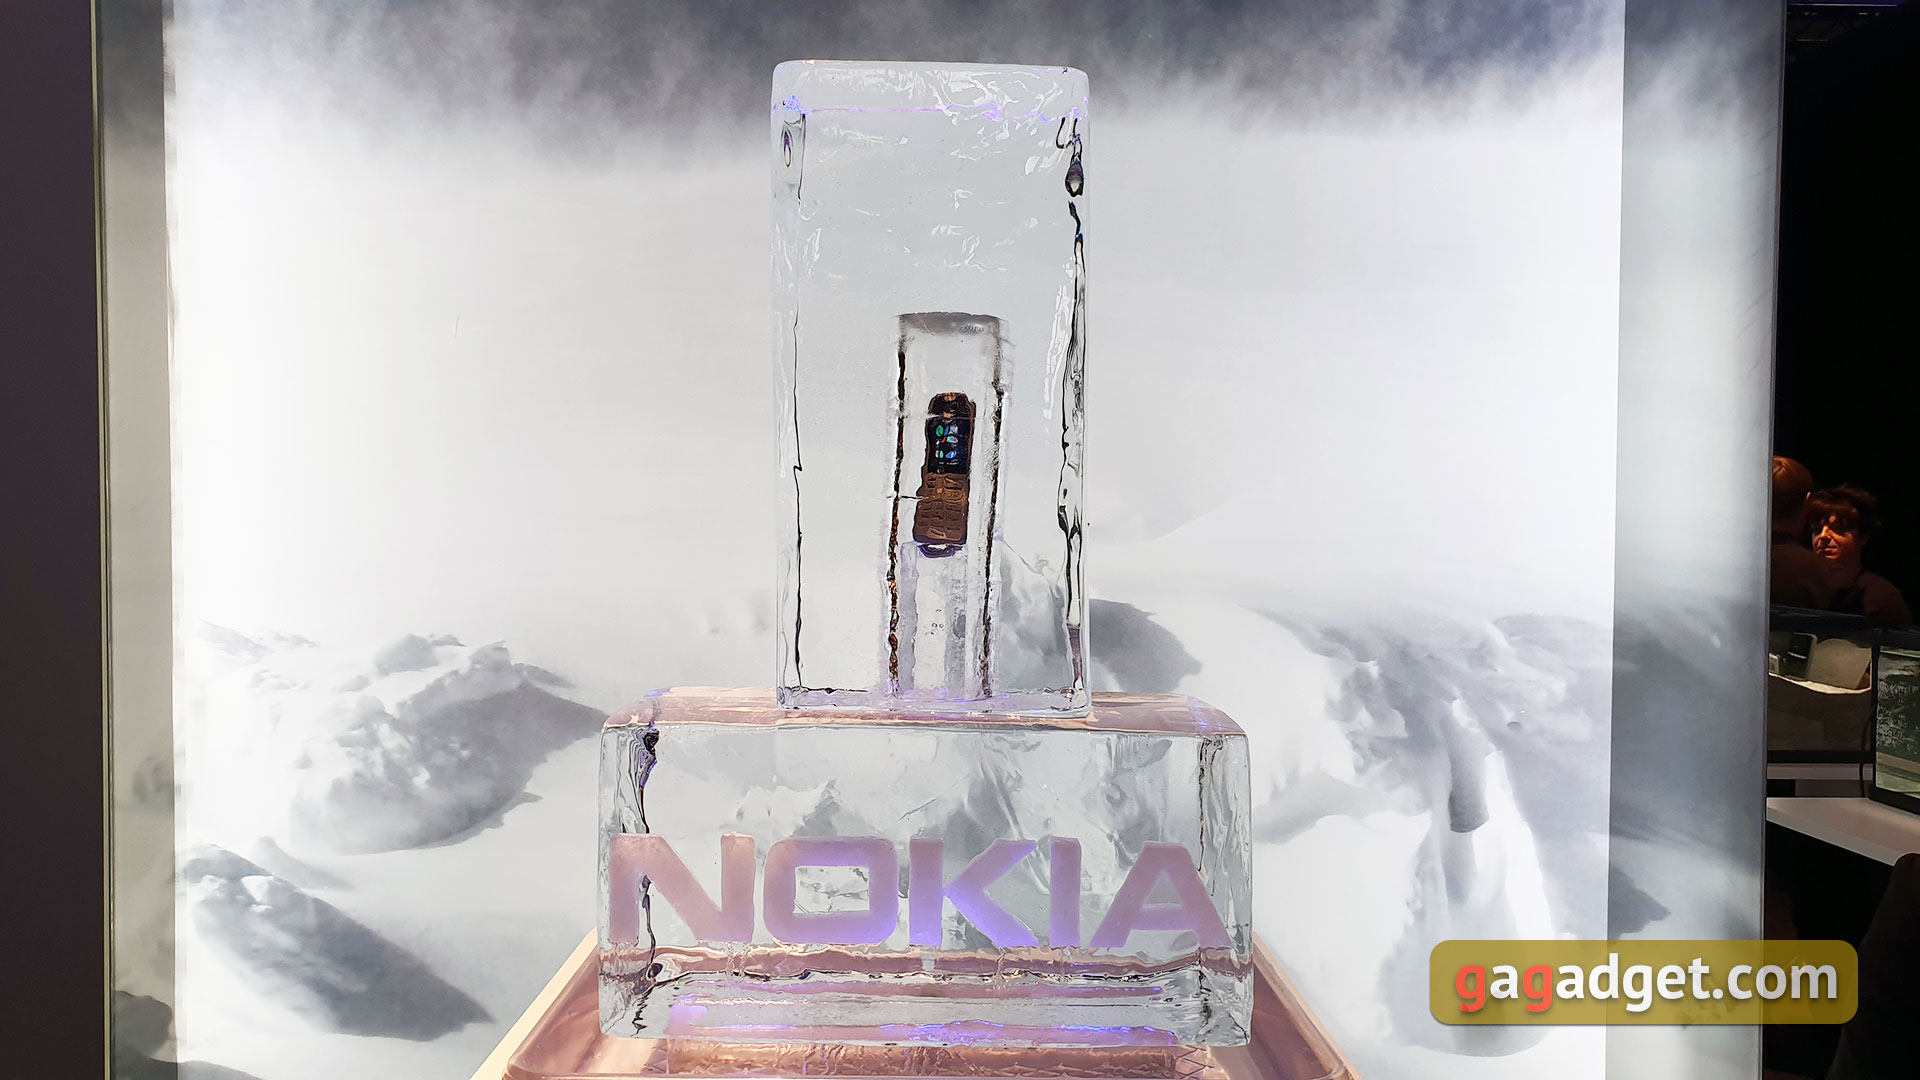 IFA 2019: смартфоны Nokia 7.2, Nokia 6.2 и новые кнопочные телефоны компании своими глазами